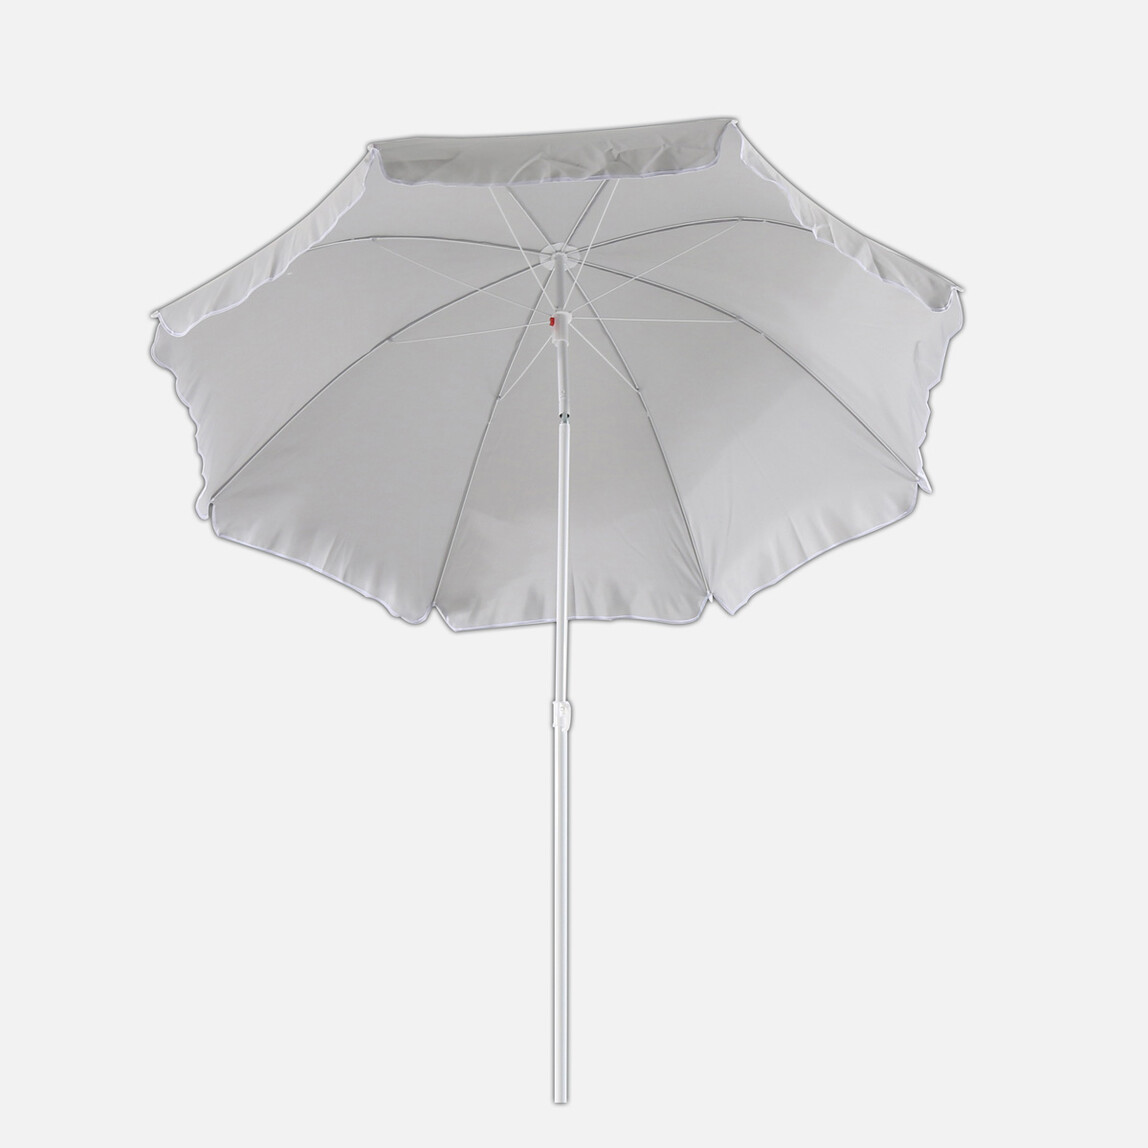    Sunfun Provence II Şemsiye Açık Gri 200 cm  